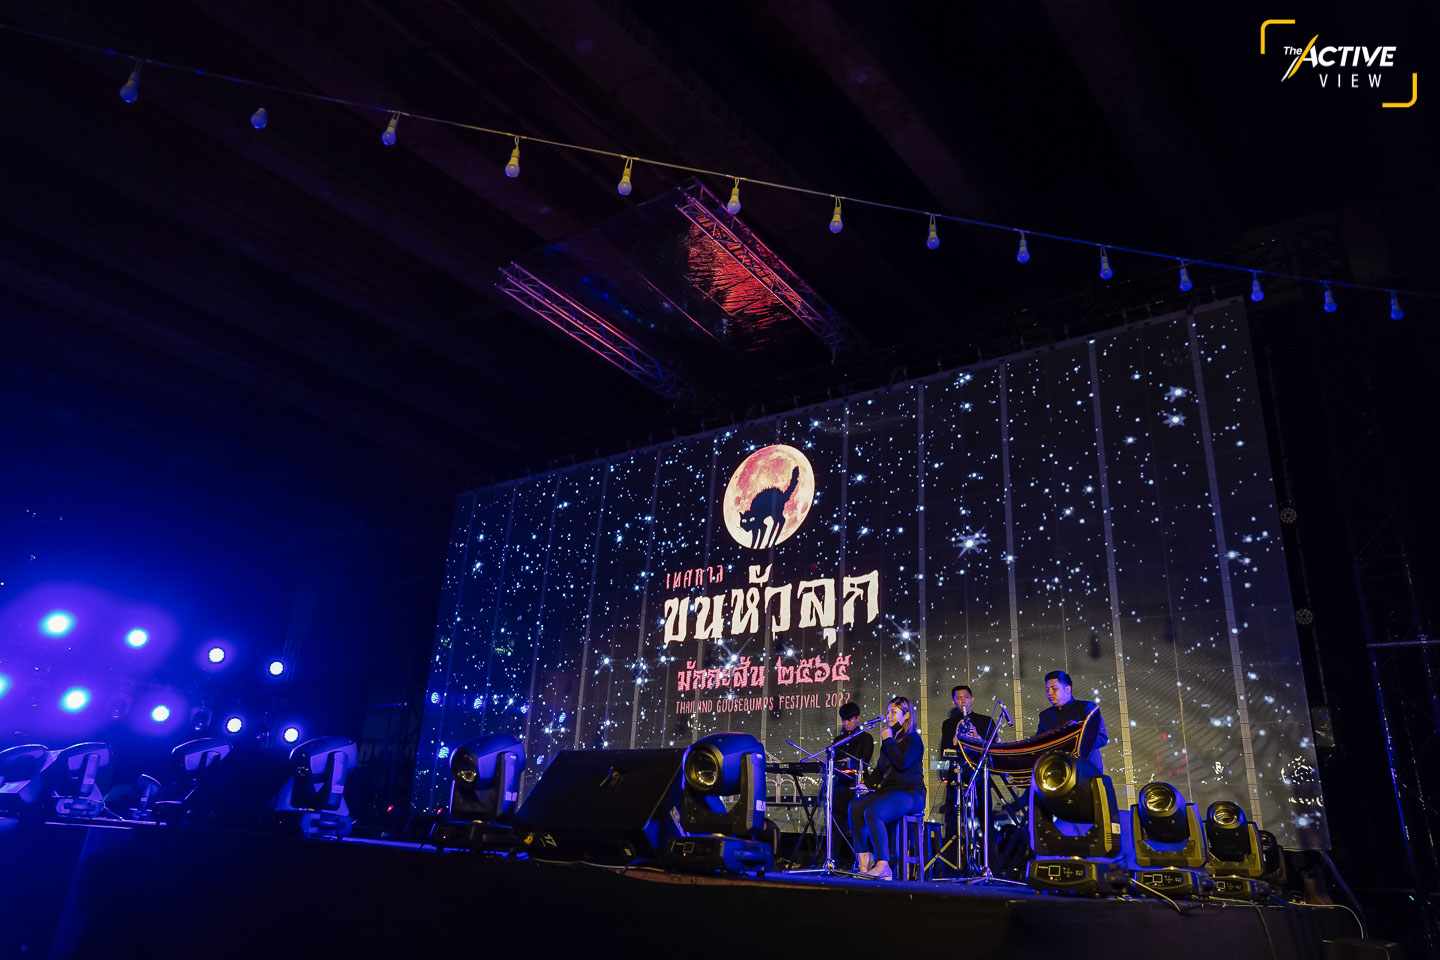 เวทีกลาง มีการแสดงโชว์ดนตรีไทย-สากล ต่อเนื่อง ในบริเวณโดยรอบจัดแสดงนิทรรศการพระพุทธรูปศักดิ์สิทธิ์ของไทย 5 ภูมิภาค กิจกรรมดูดวงไพ่ยิปซีกับหมอดู เหมาะกับ “สายมู” “สายบูชา”